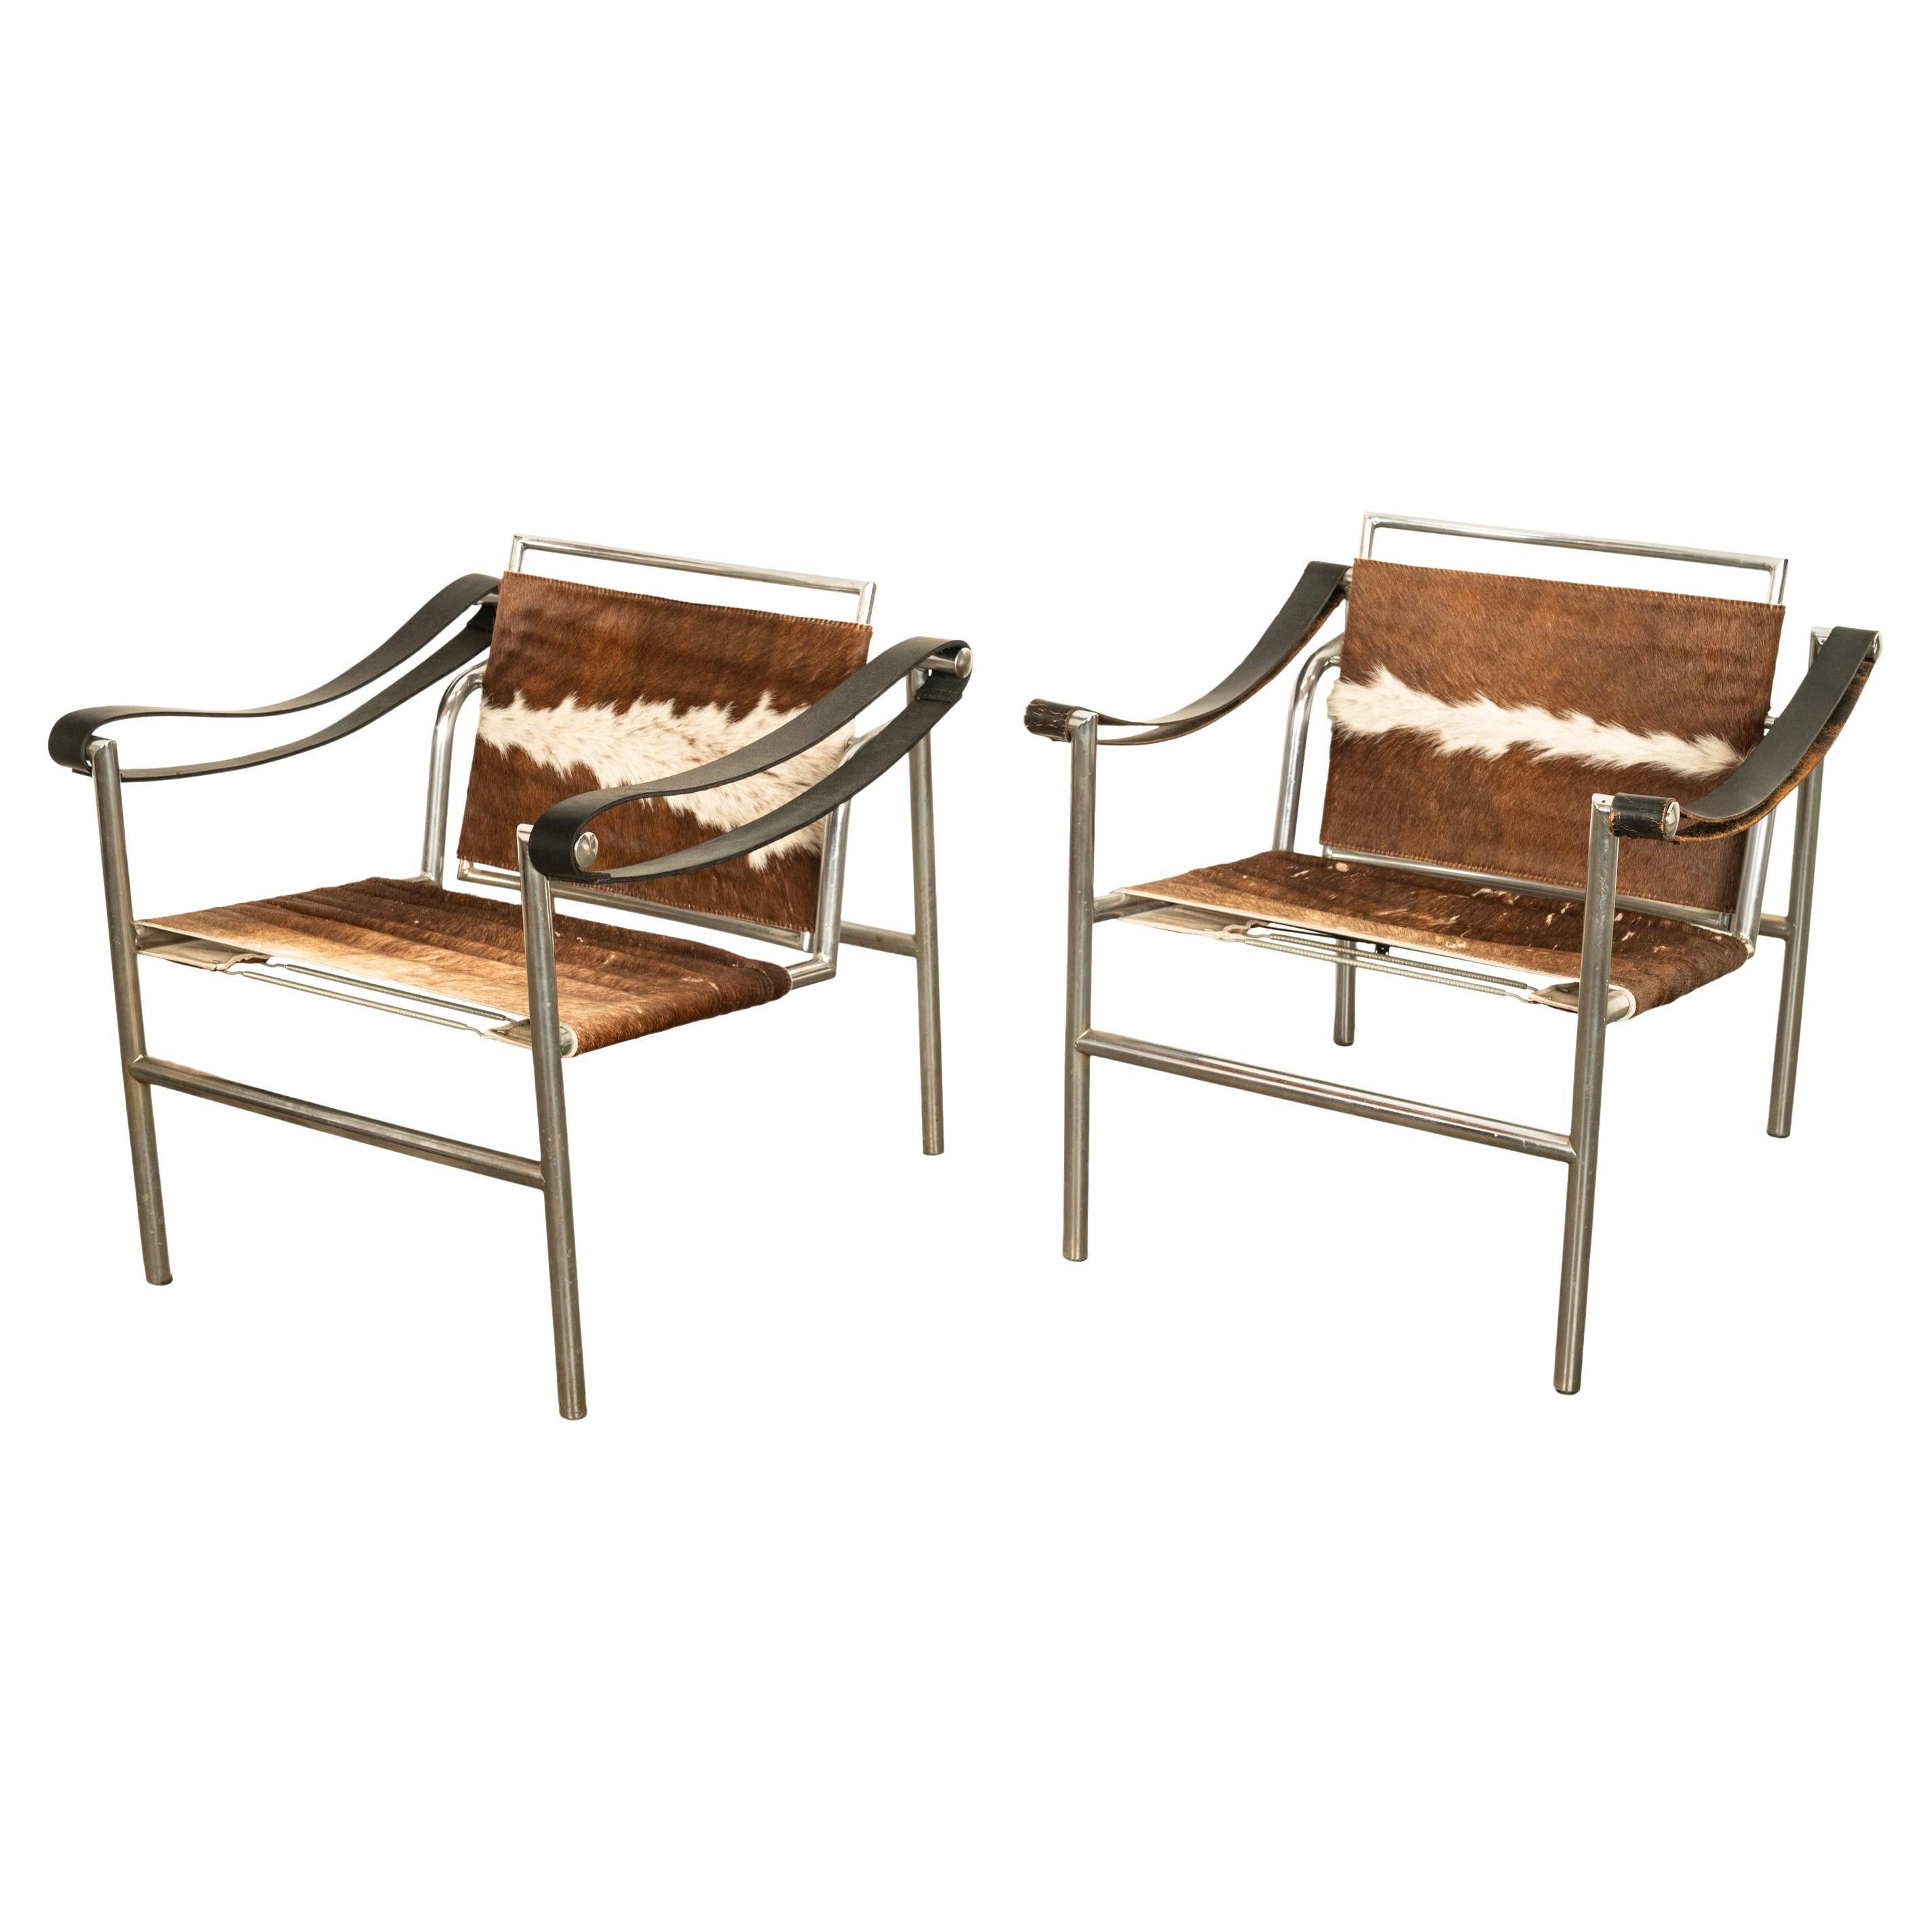 Très bonne paire de chaises à bretelles MCM Le Corbusier LC1, par Cassina, années 1960.
Ce design emblématique a été conçu au Bauhaus grâce à la Collaboration de Le Corbusier et Charlotte Perriand en 1929.
Cette paire est une production précoce